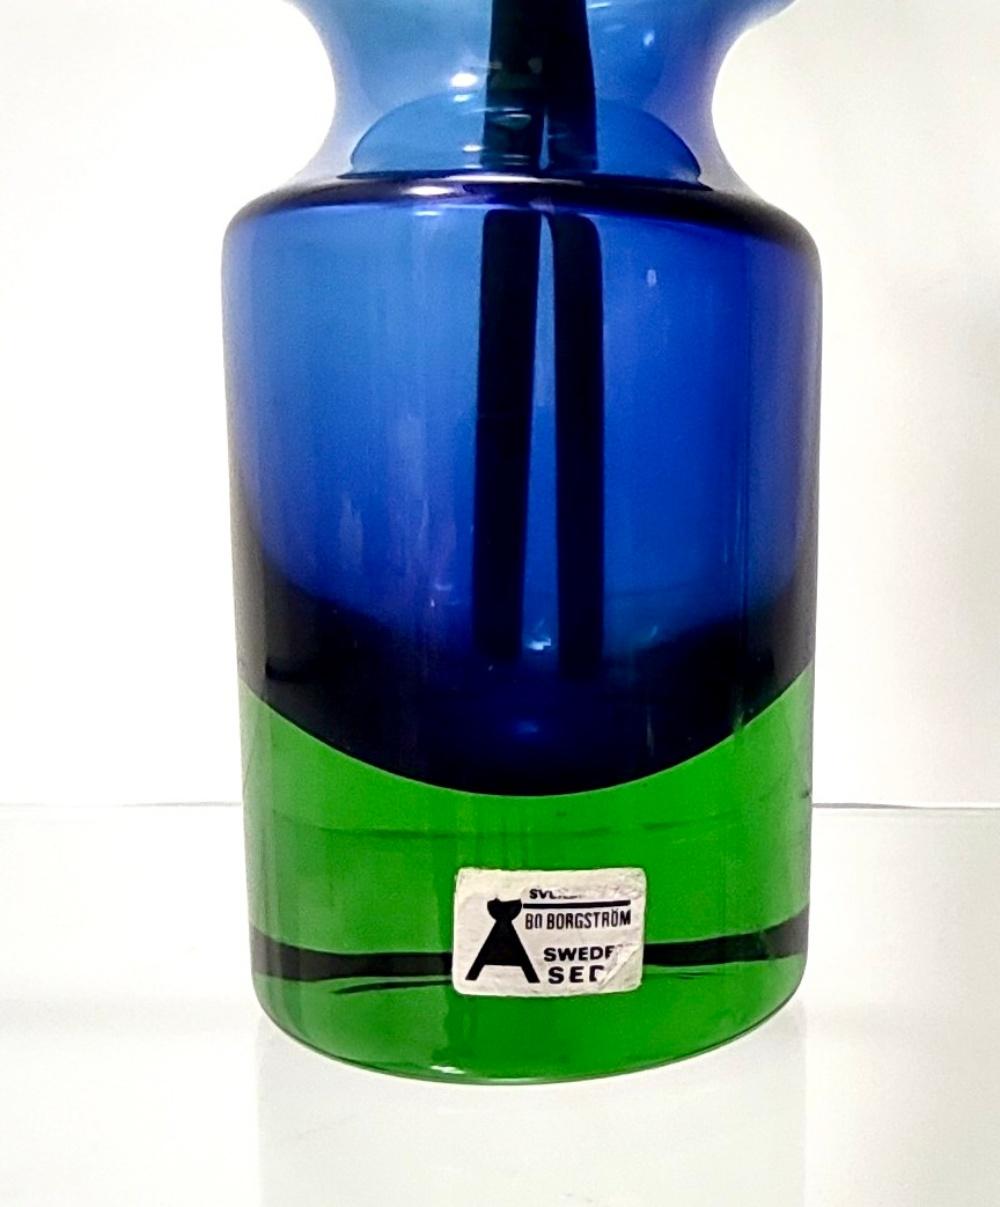 Mid-20th Century Postmodern Blue/Green Segmented Vase Model B5/604 by Bo Borgström for Åseda